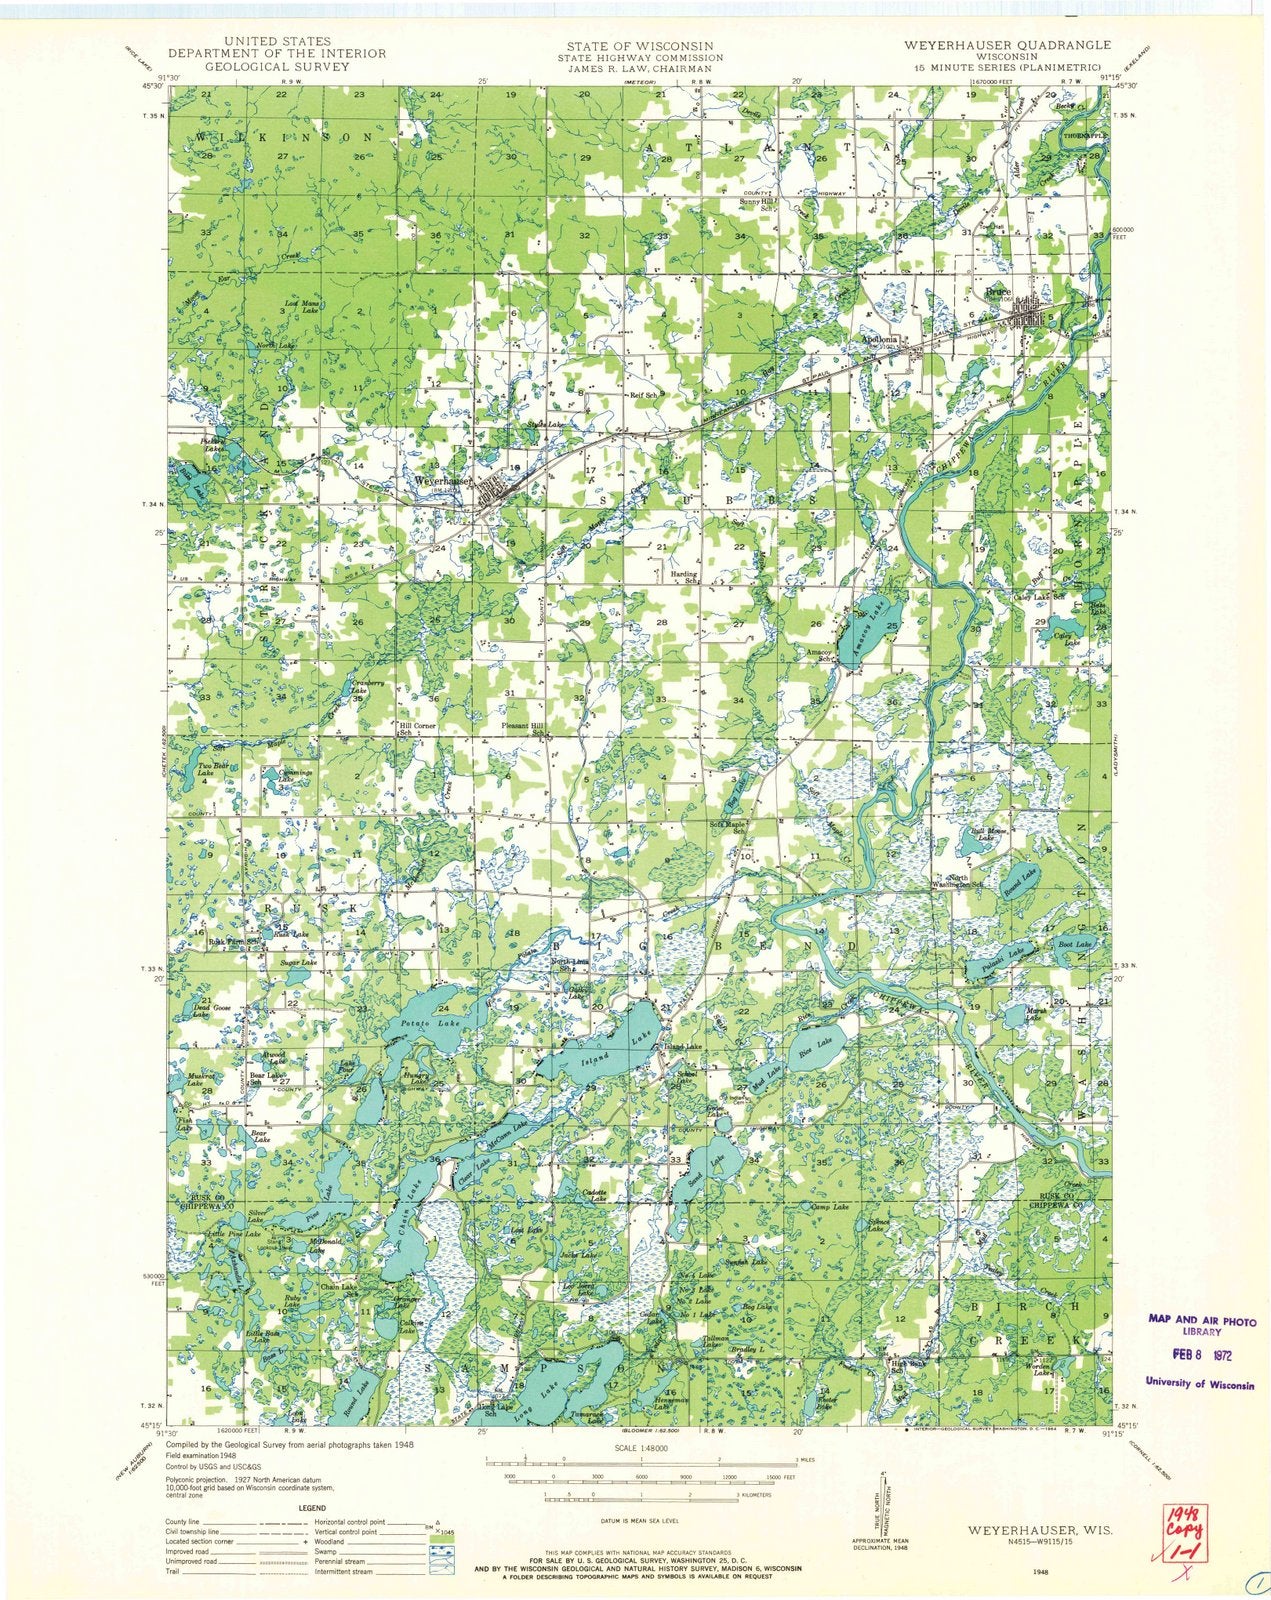 1948 Weyerhauser, WI - Wisconsin - USGS Topographic Map